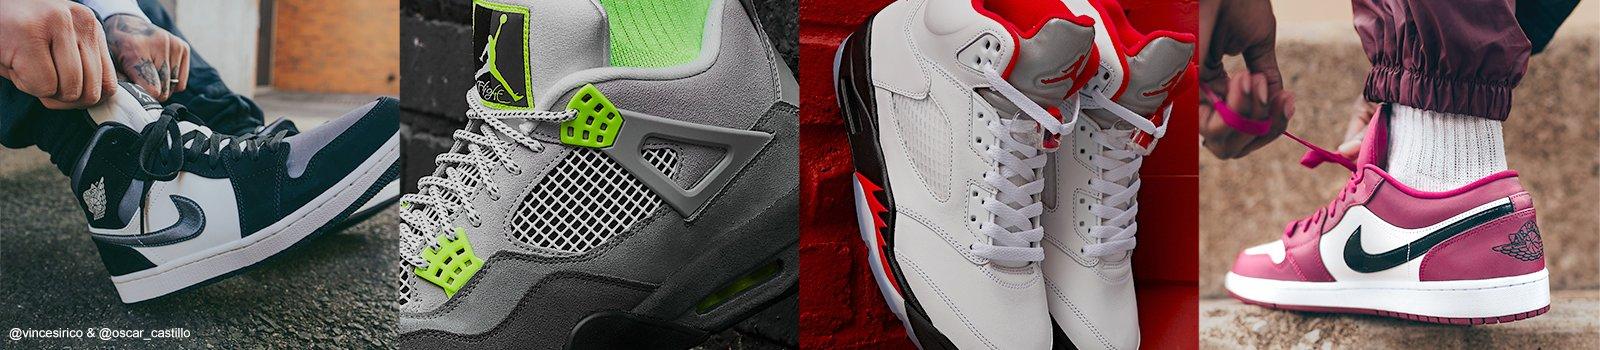 gray jordan sneakers